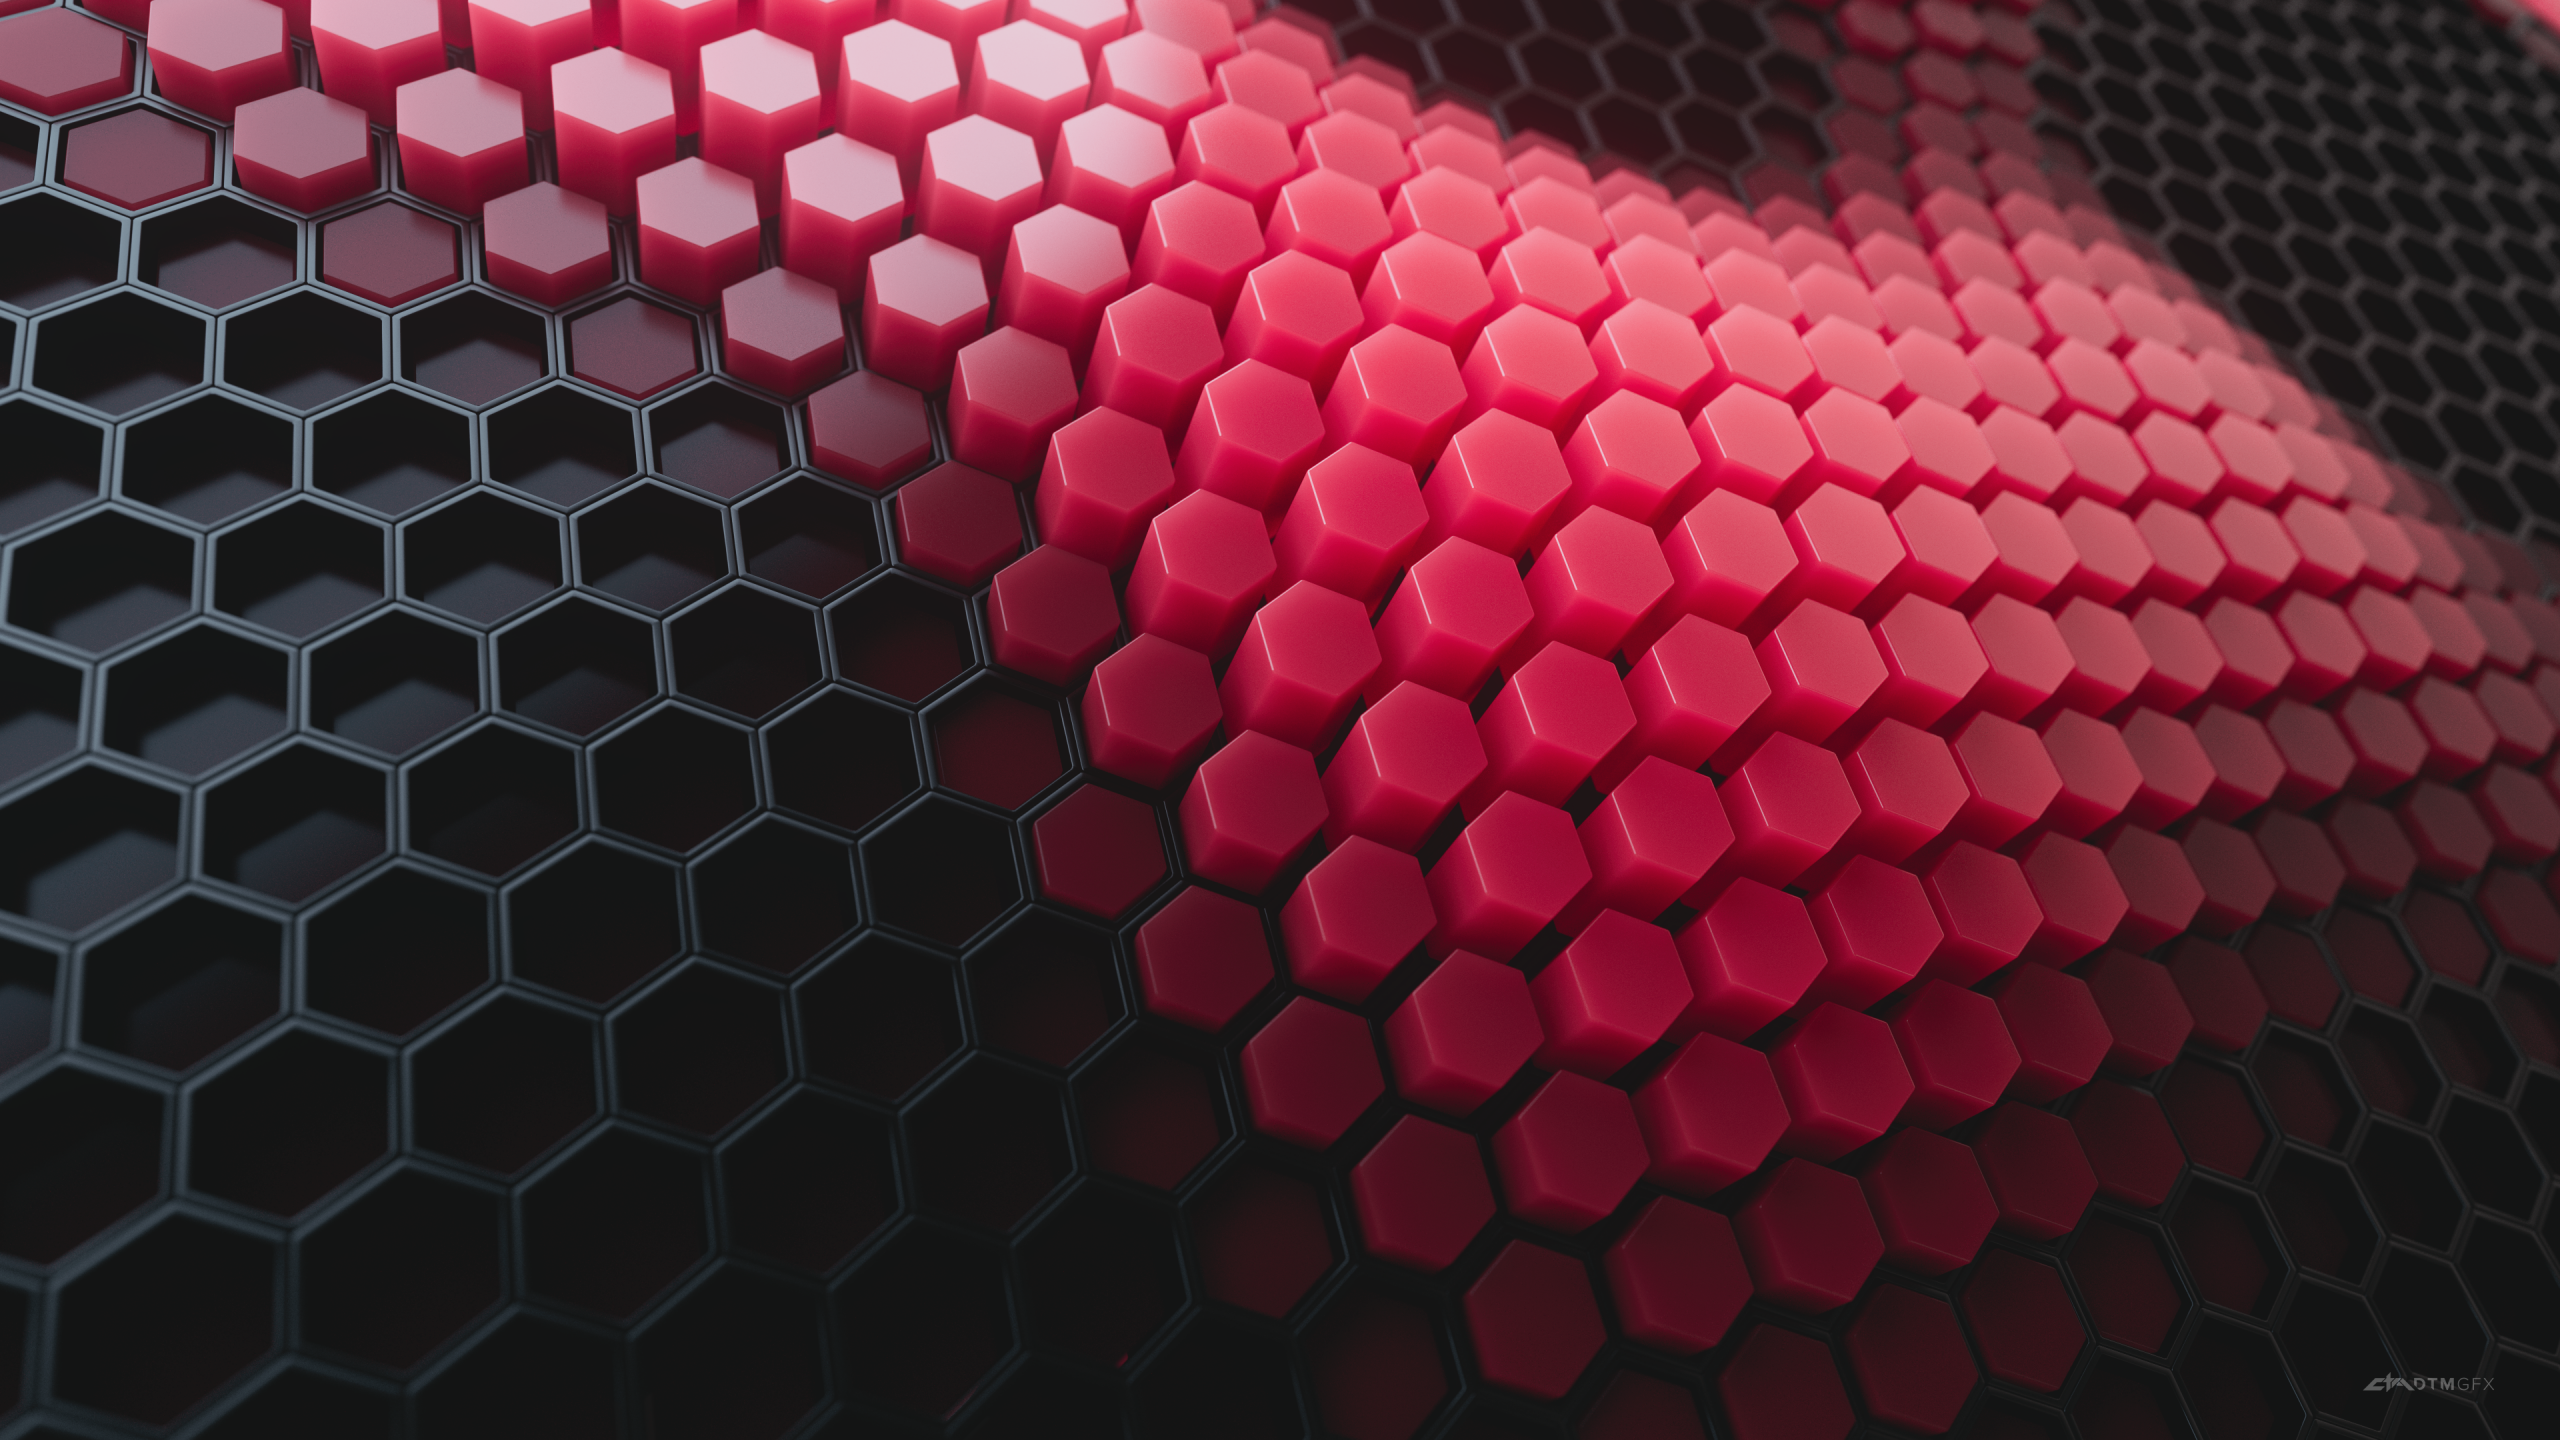 Hình nền Hexagons 4K: Cùng vào trang web của chúng tôi để khám phá những hình nền cực đẹp với chất lượng 4K độc đáo về hình dạng Hexagons. Bạn sẽ thấy mọi thứ lấp lánh và sáng tạo như chưa từng thấy trước đó!